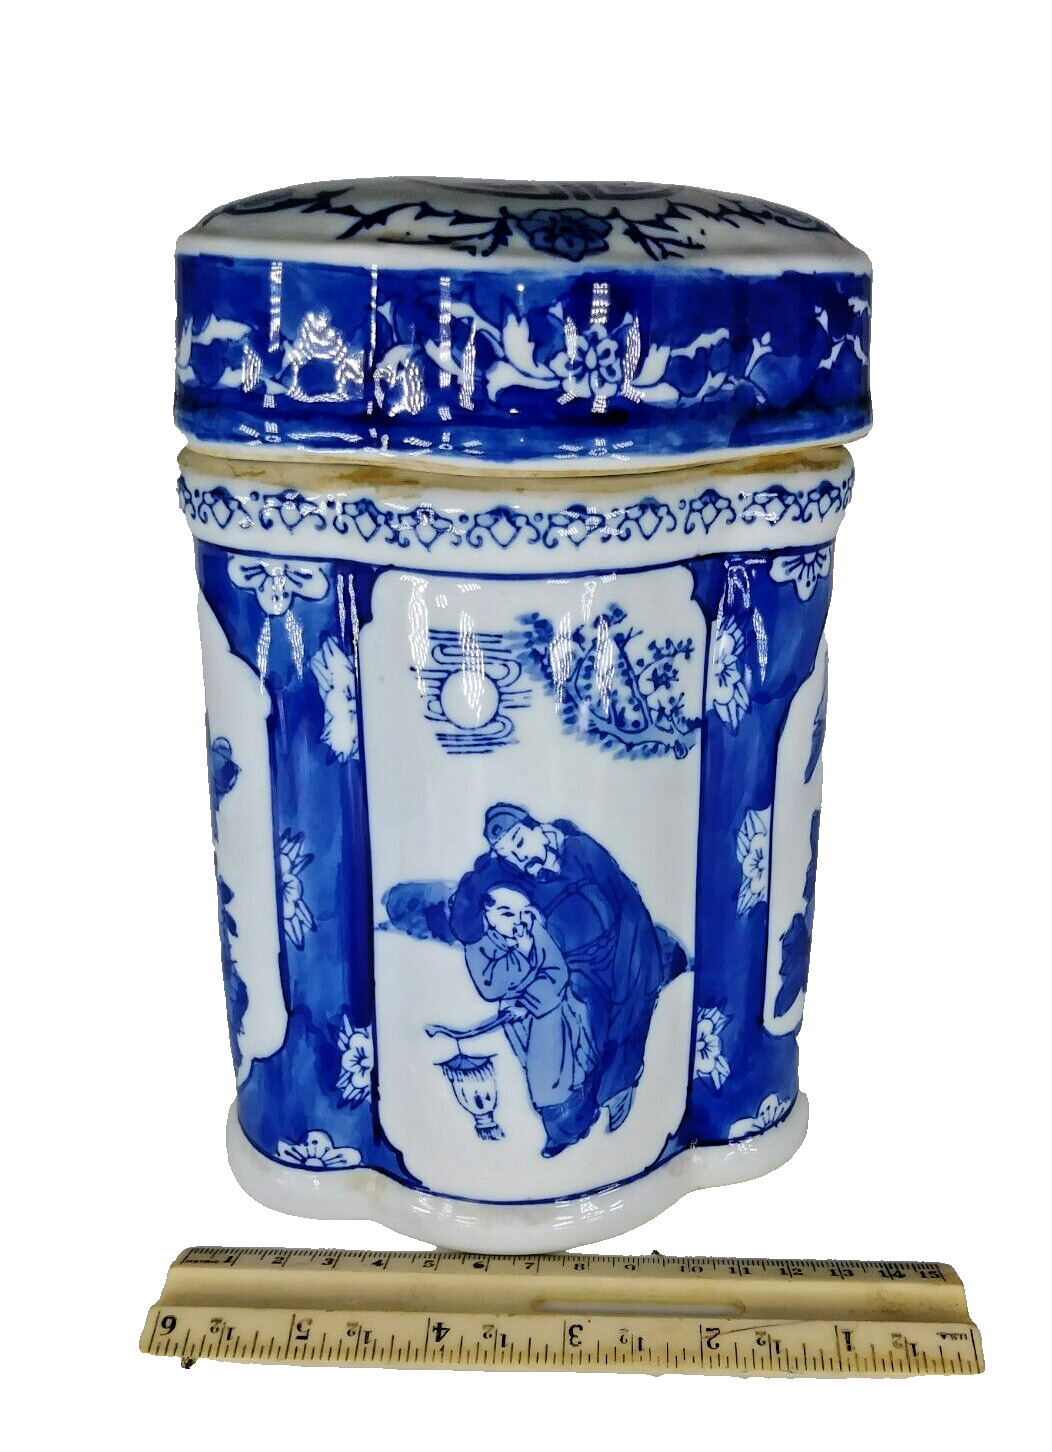 Vintage oriental ceramic container